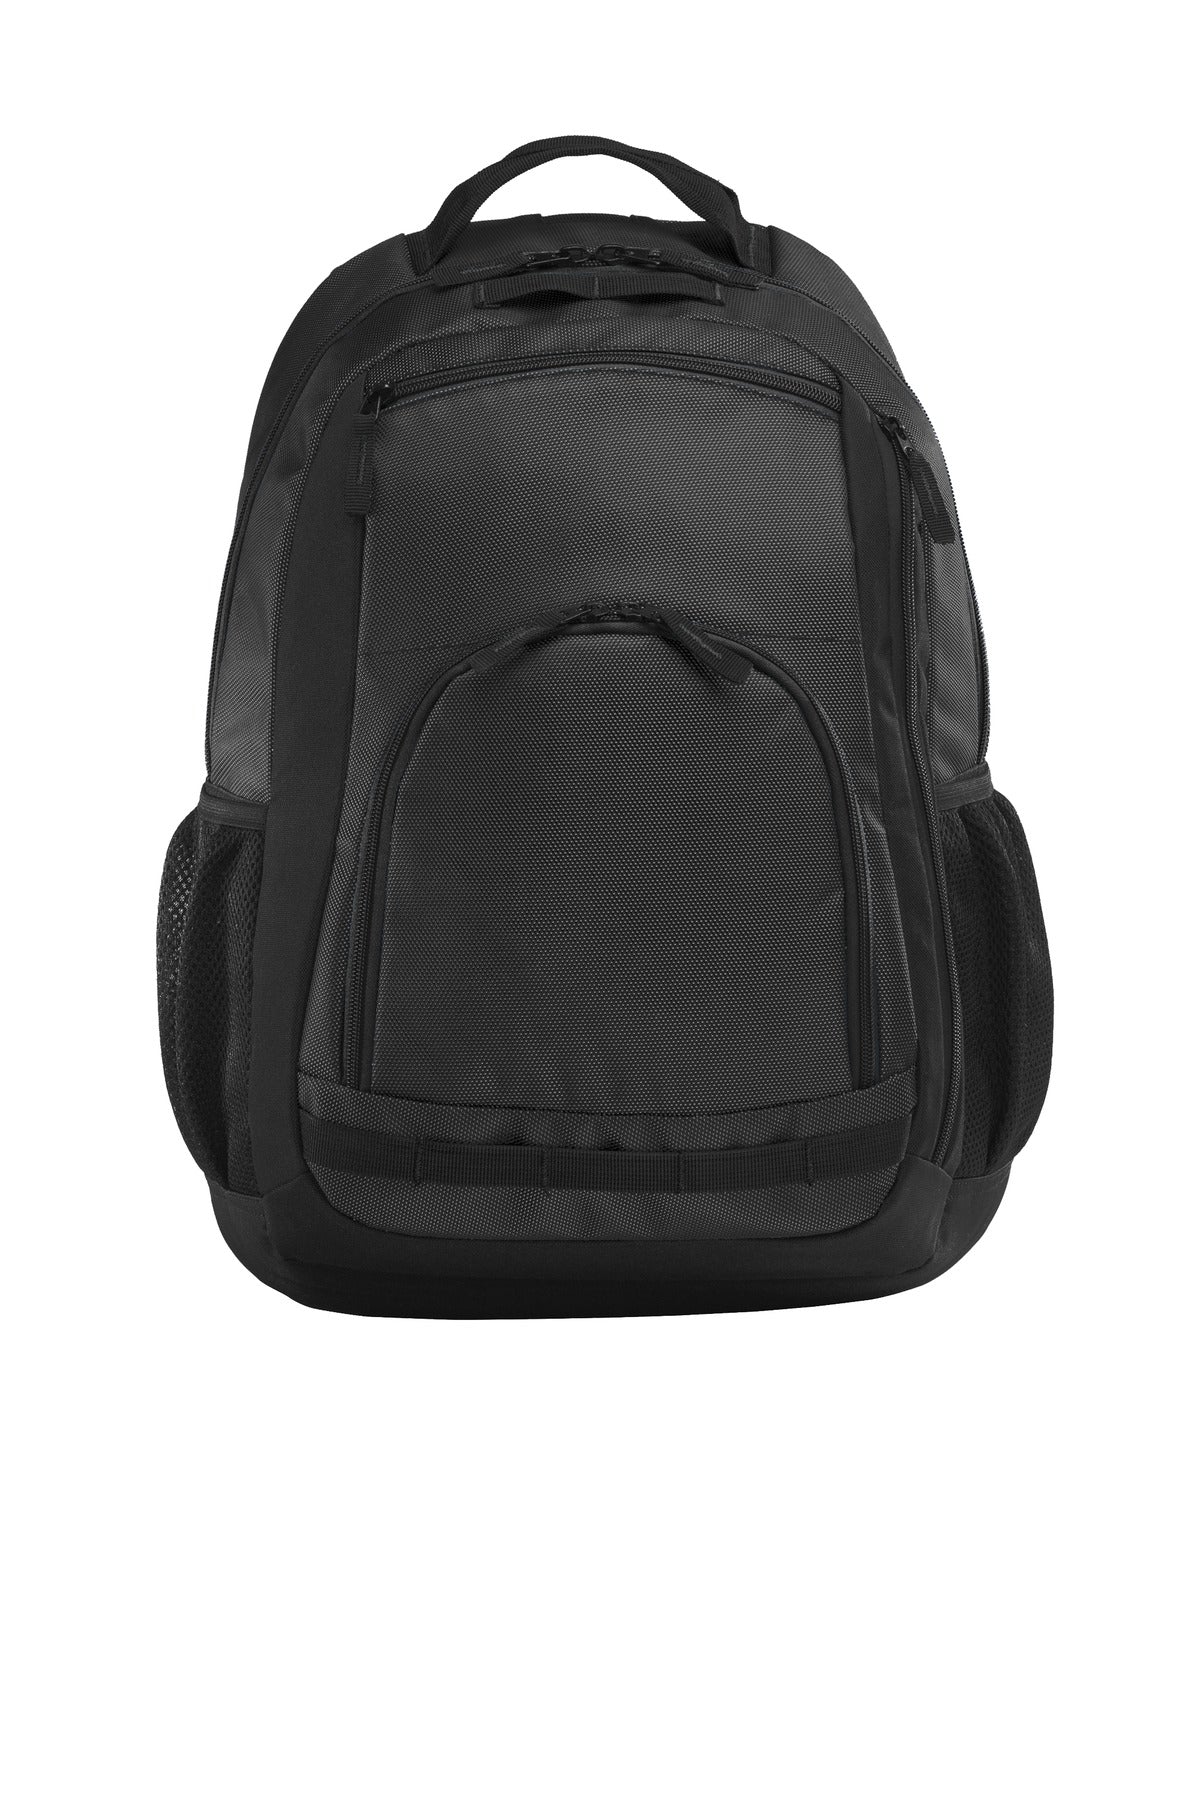 Port Authority® Xtreme Backpack. BG207 - DFW Impression